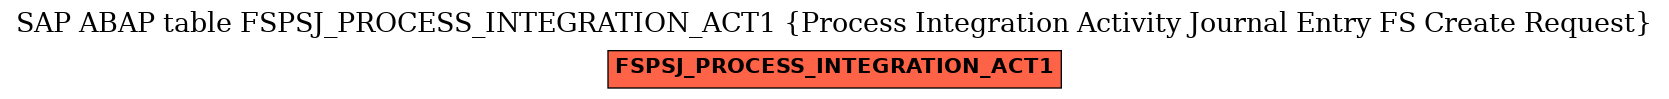 E-R Diagram for table FSPSJ_PROCESS_INTEGRATION_ACT1 (Process Integration Activity Journal Entry FS Create Request)